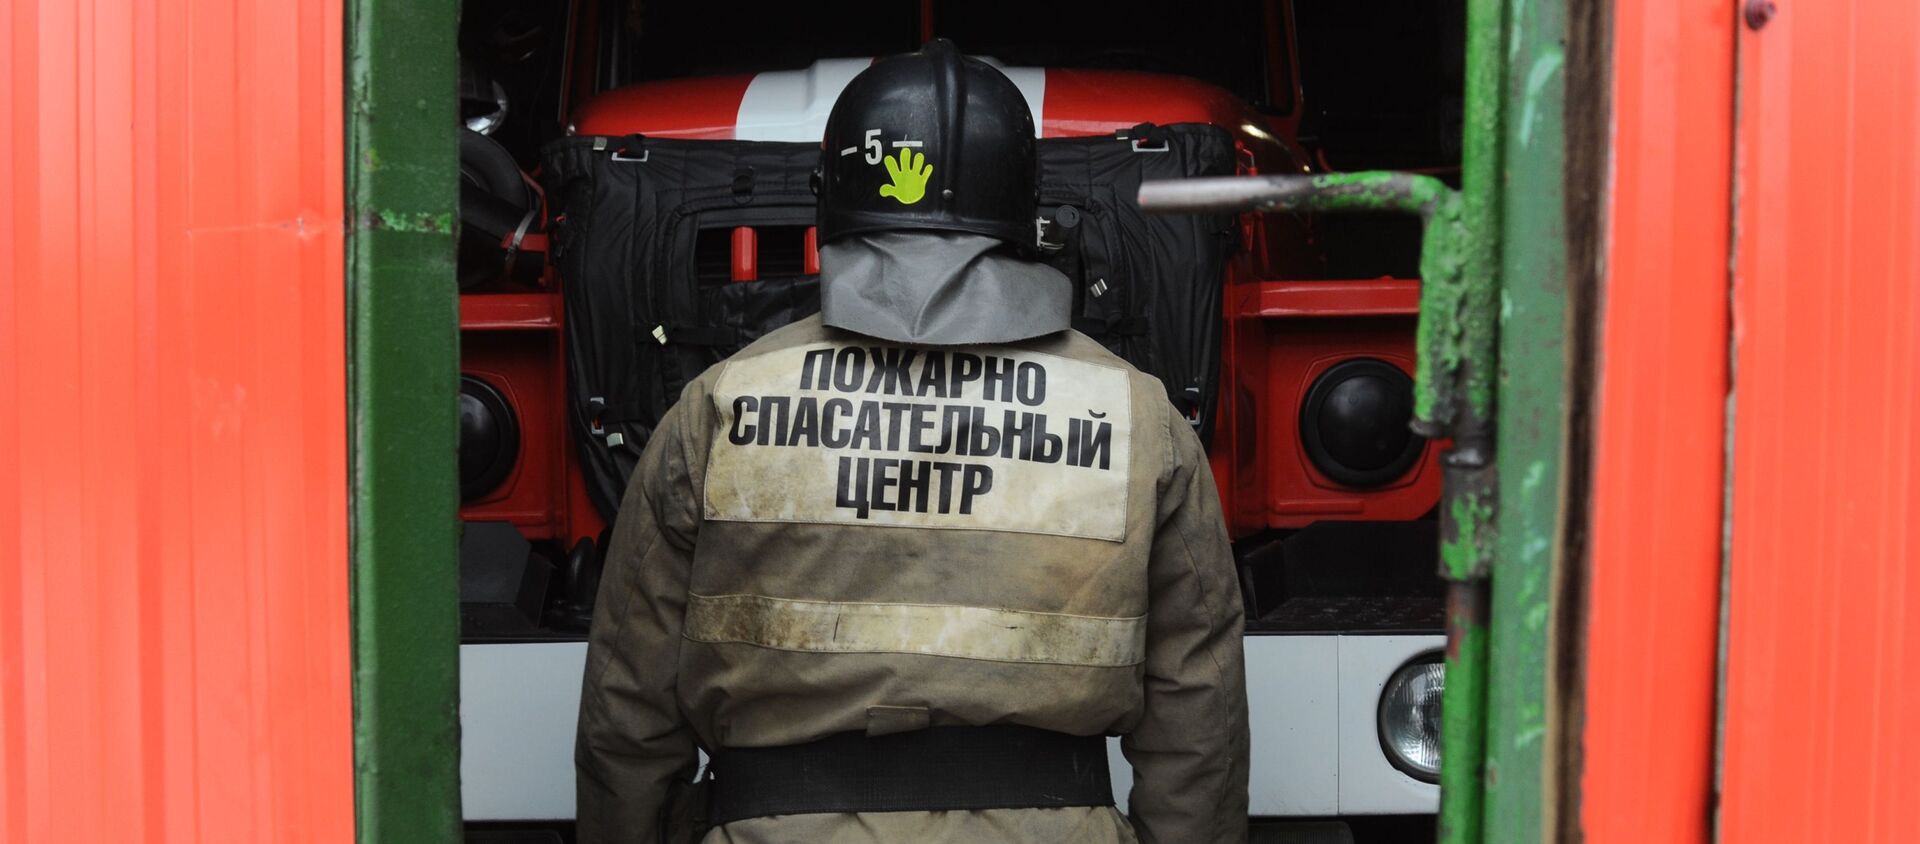 Работа пожарно - спасательного центра в Тамбове  - Sputnik Аҧсны, 1920, 25.01.2021